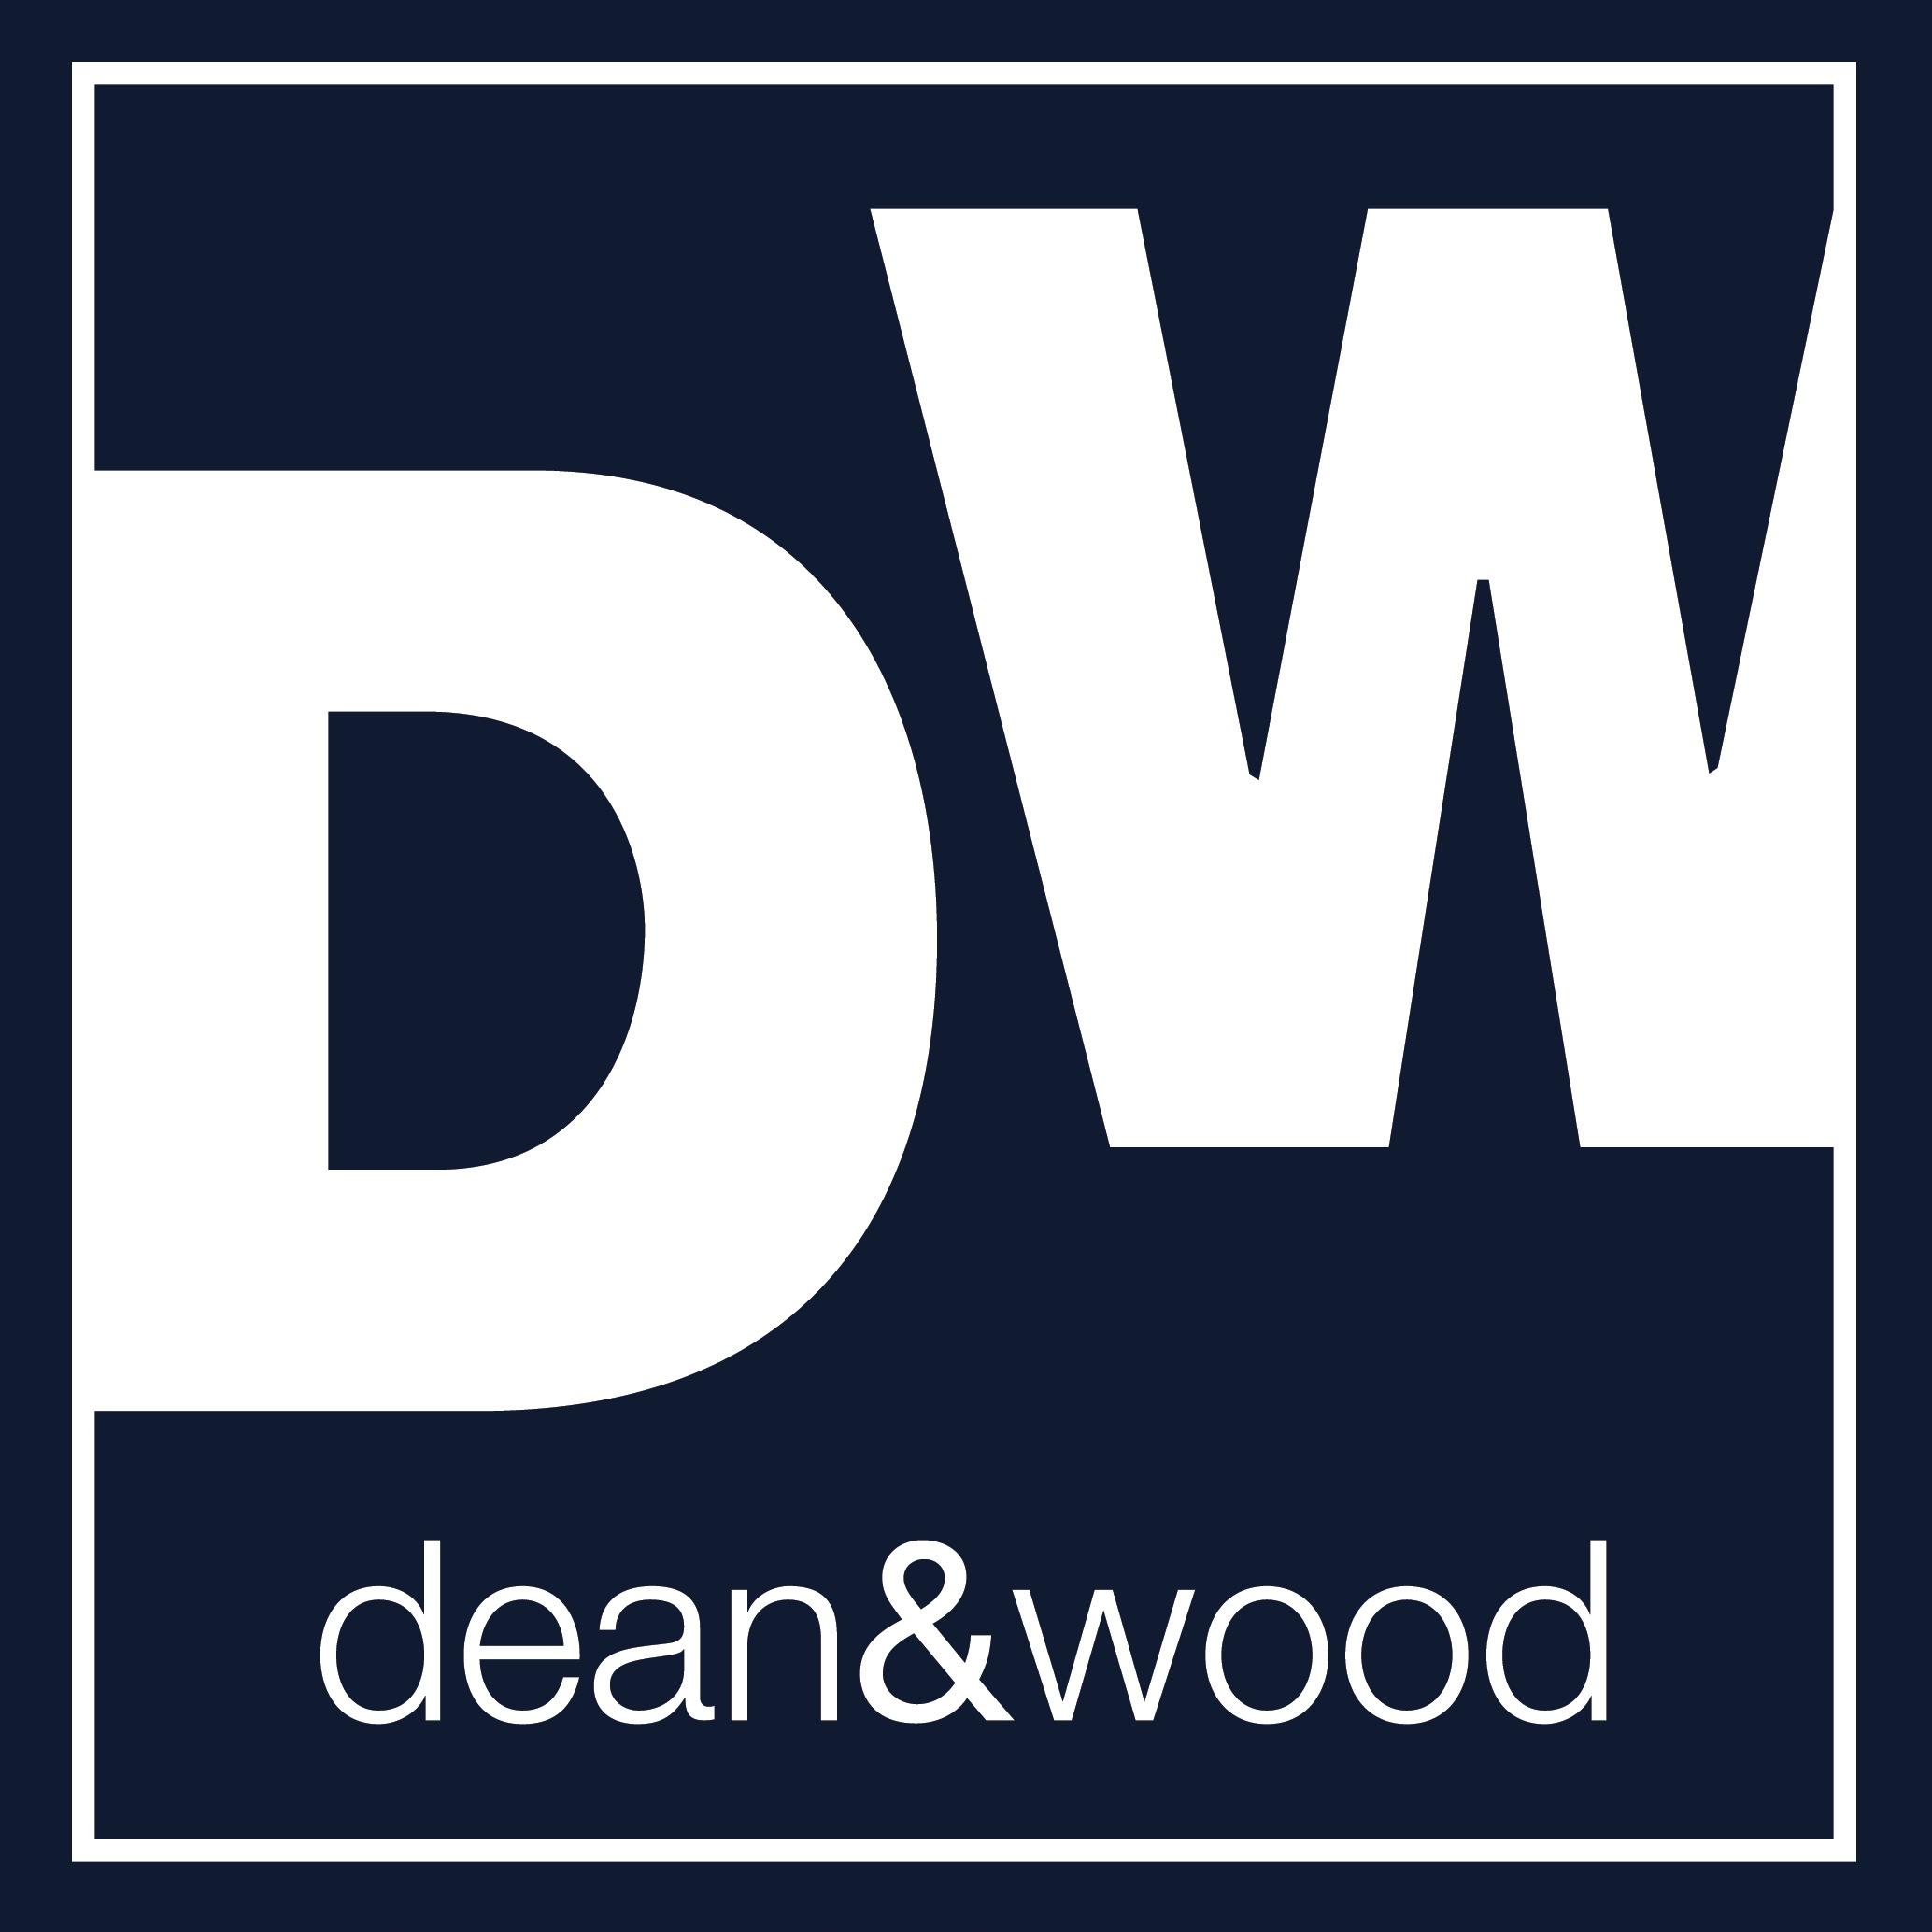 Dean & Wood